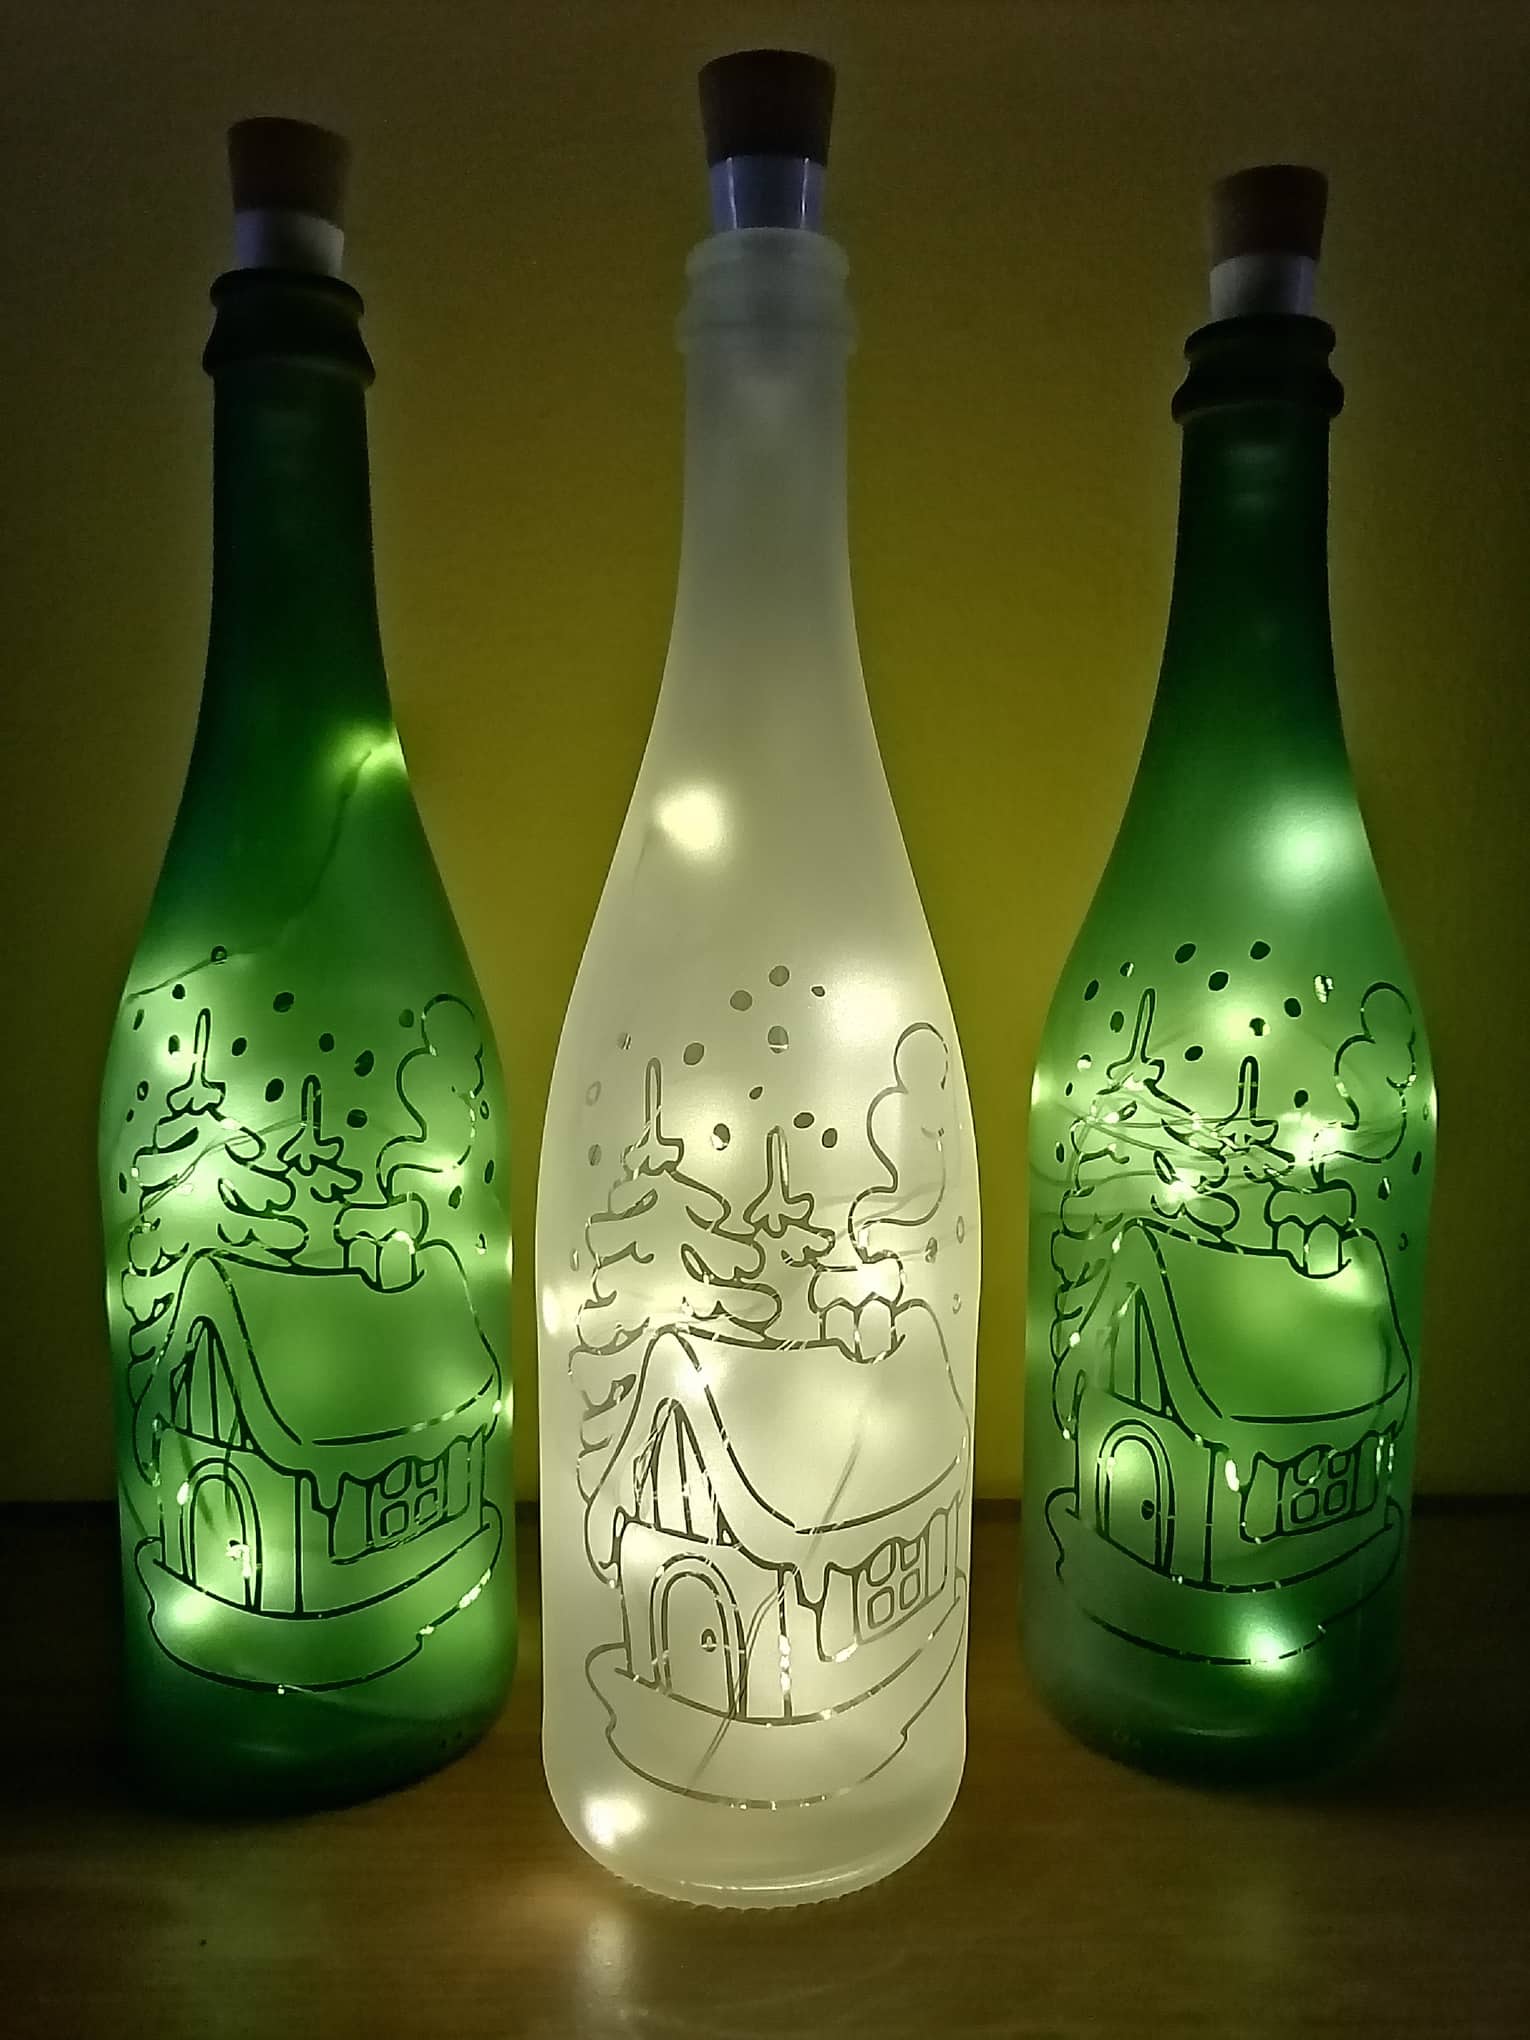 rozhovor: helena tvoří úžasné pískované vzory na svetelné láhve